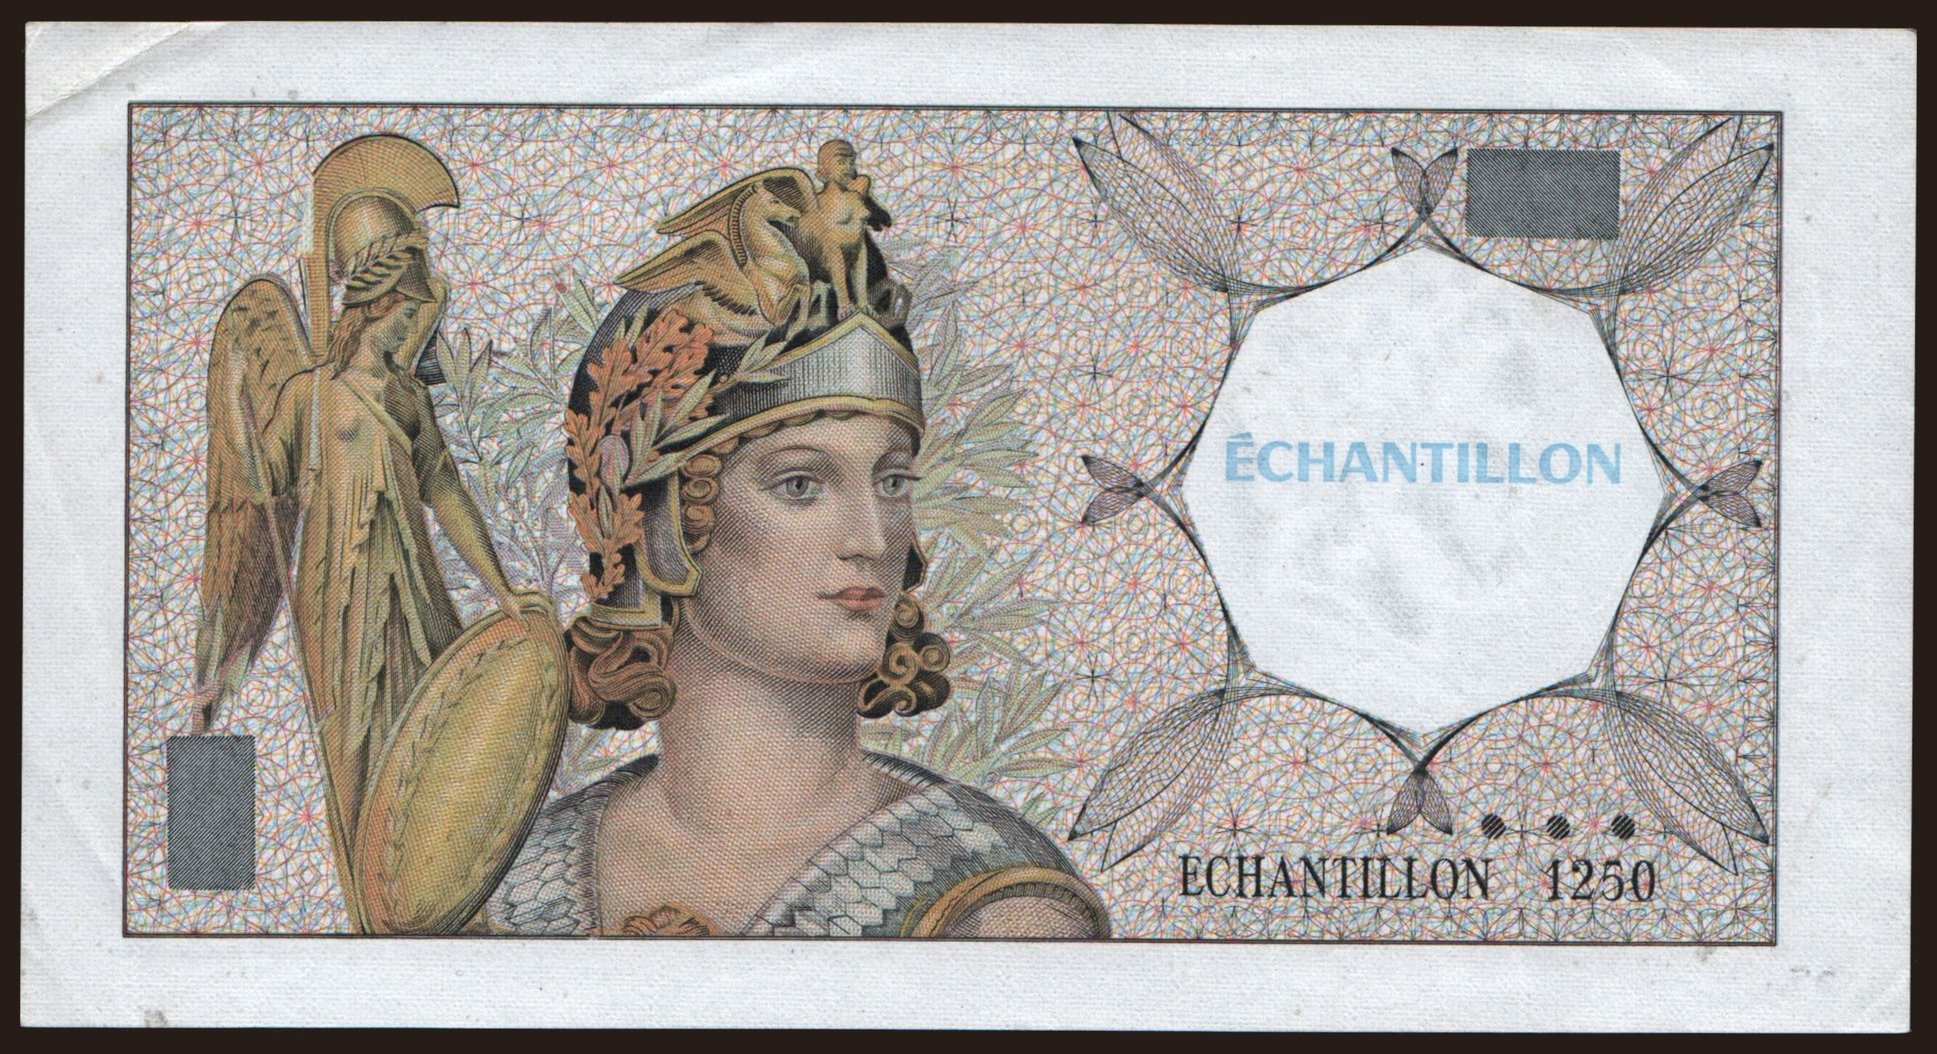 Echantillon, 1250